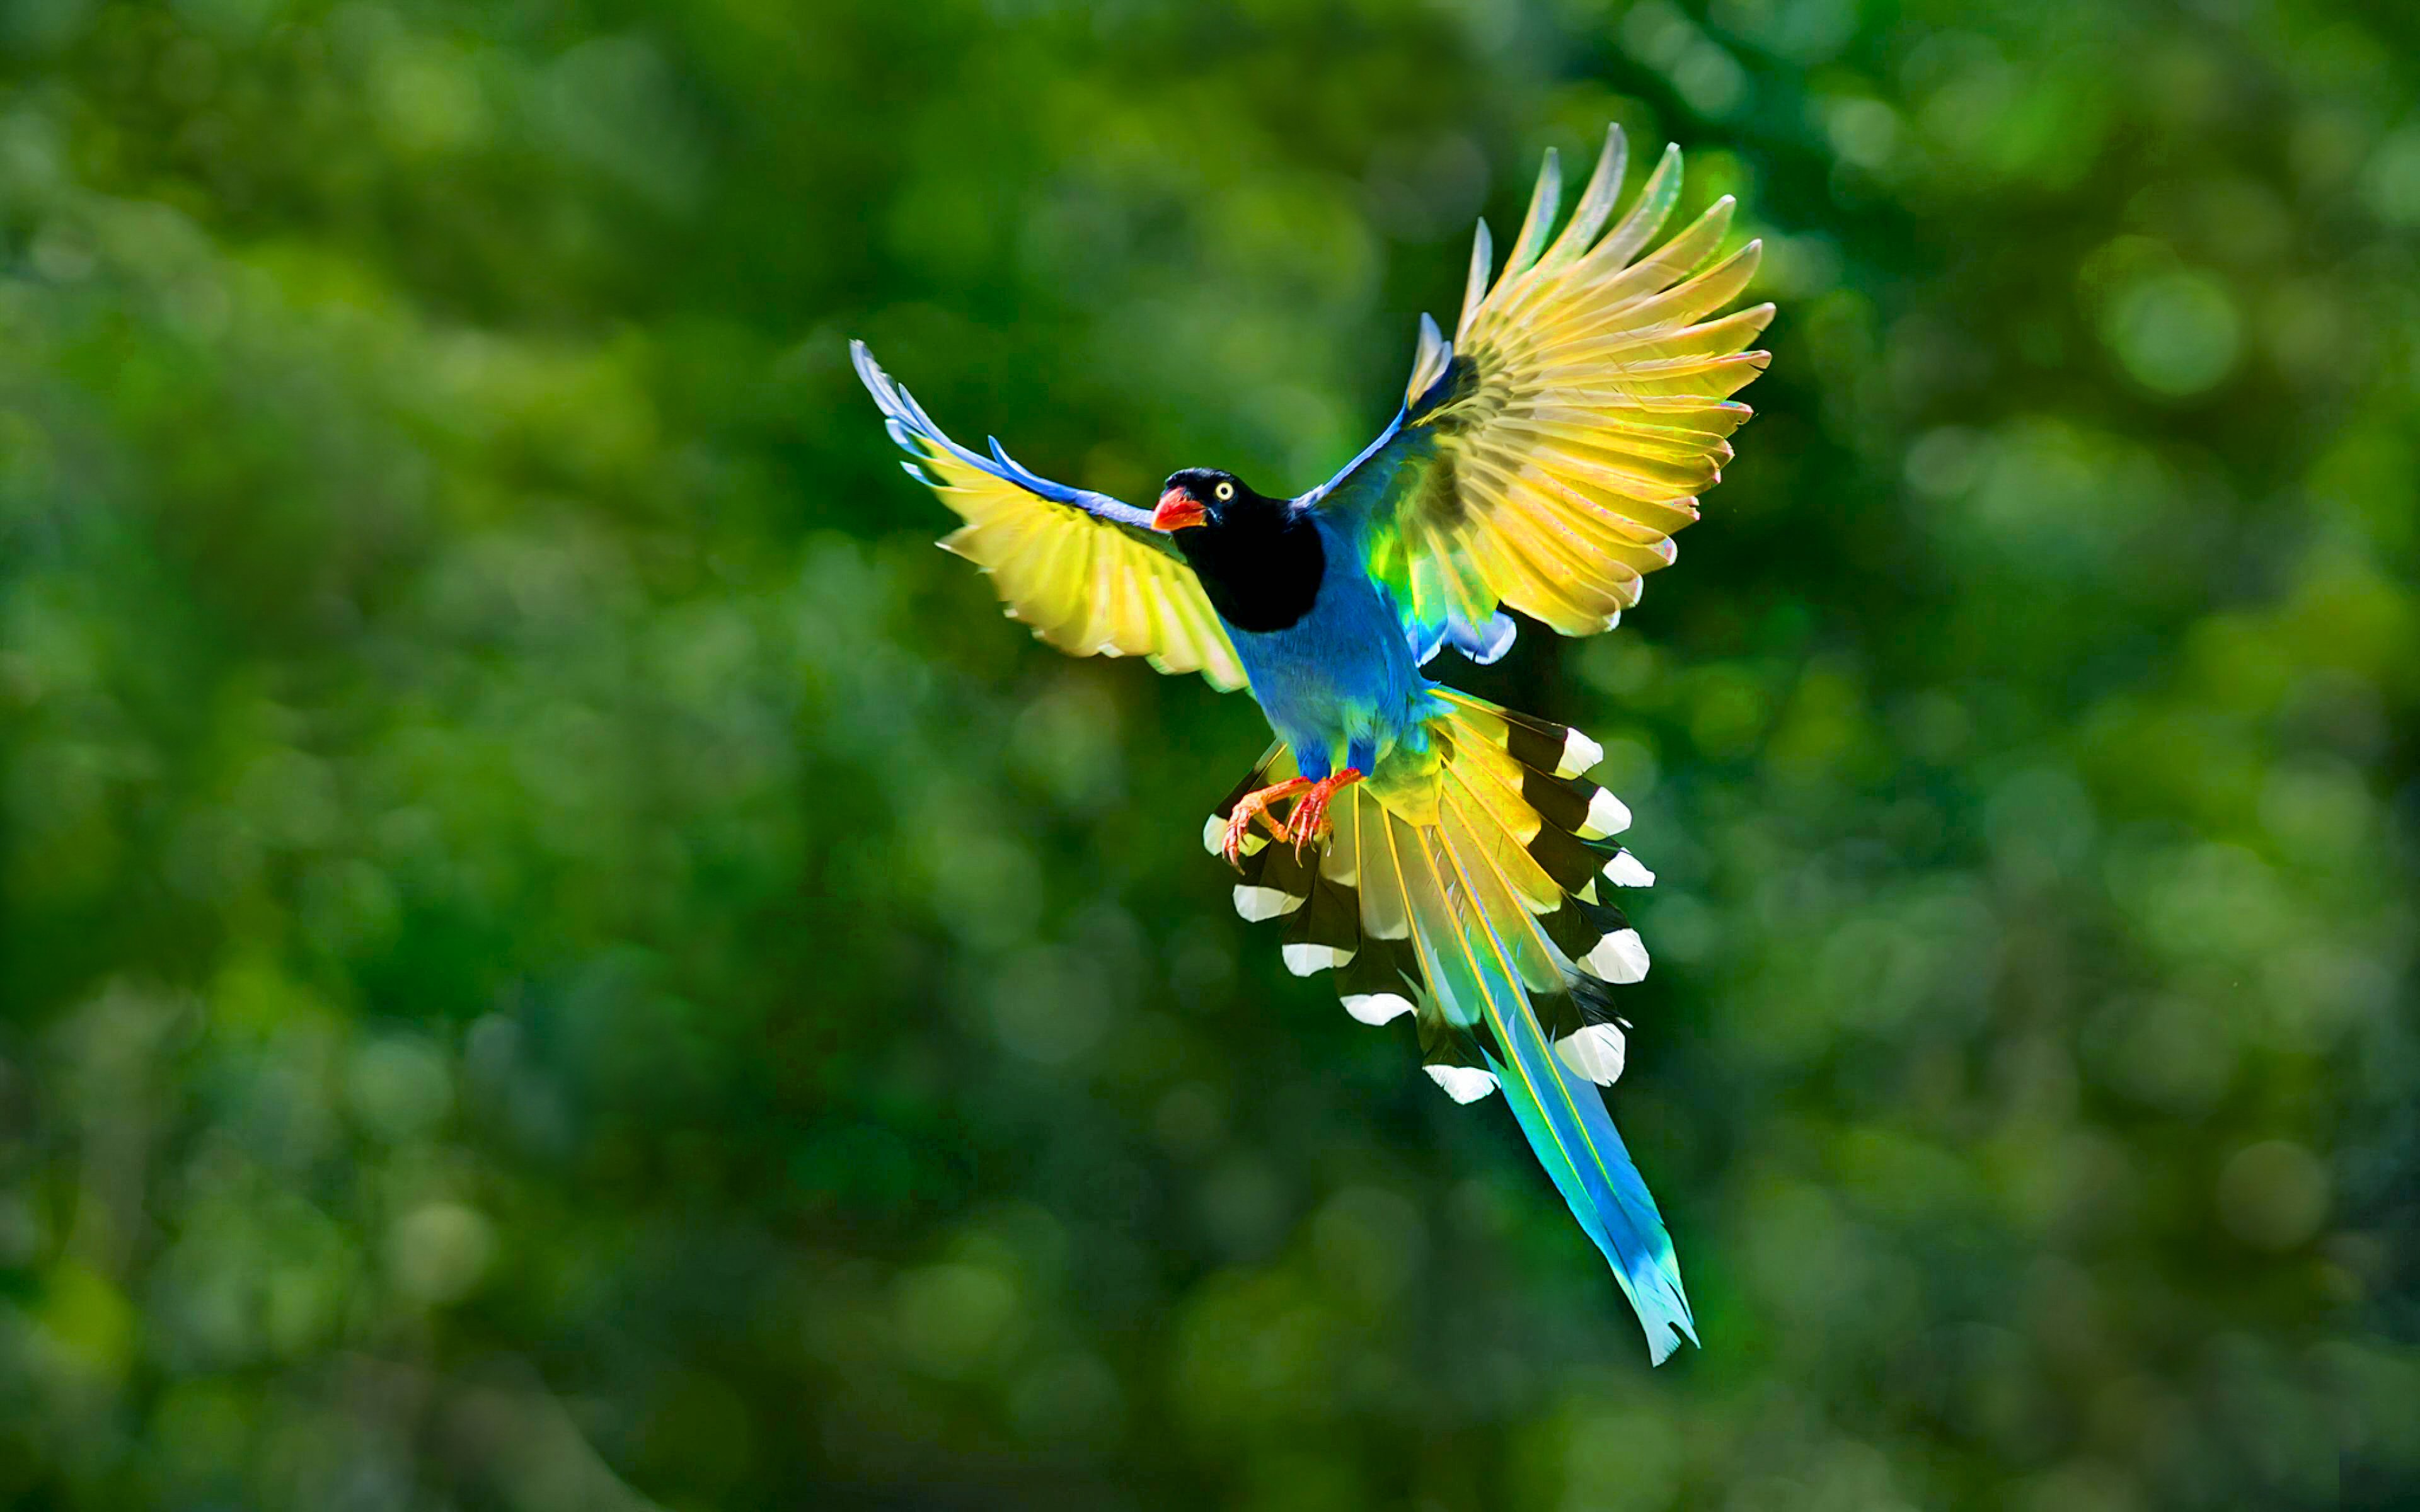 Tải 25 hình ảnh các loài chim đẹp nhất thế giới - [Kích thước hình ảnh: 3840x2400 px]